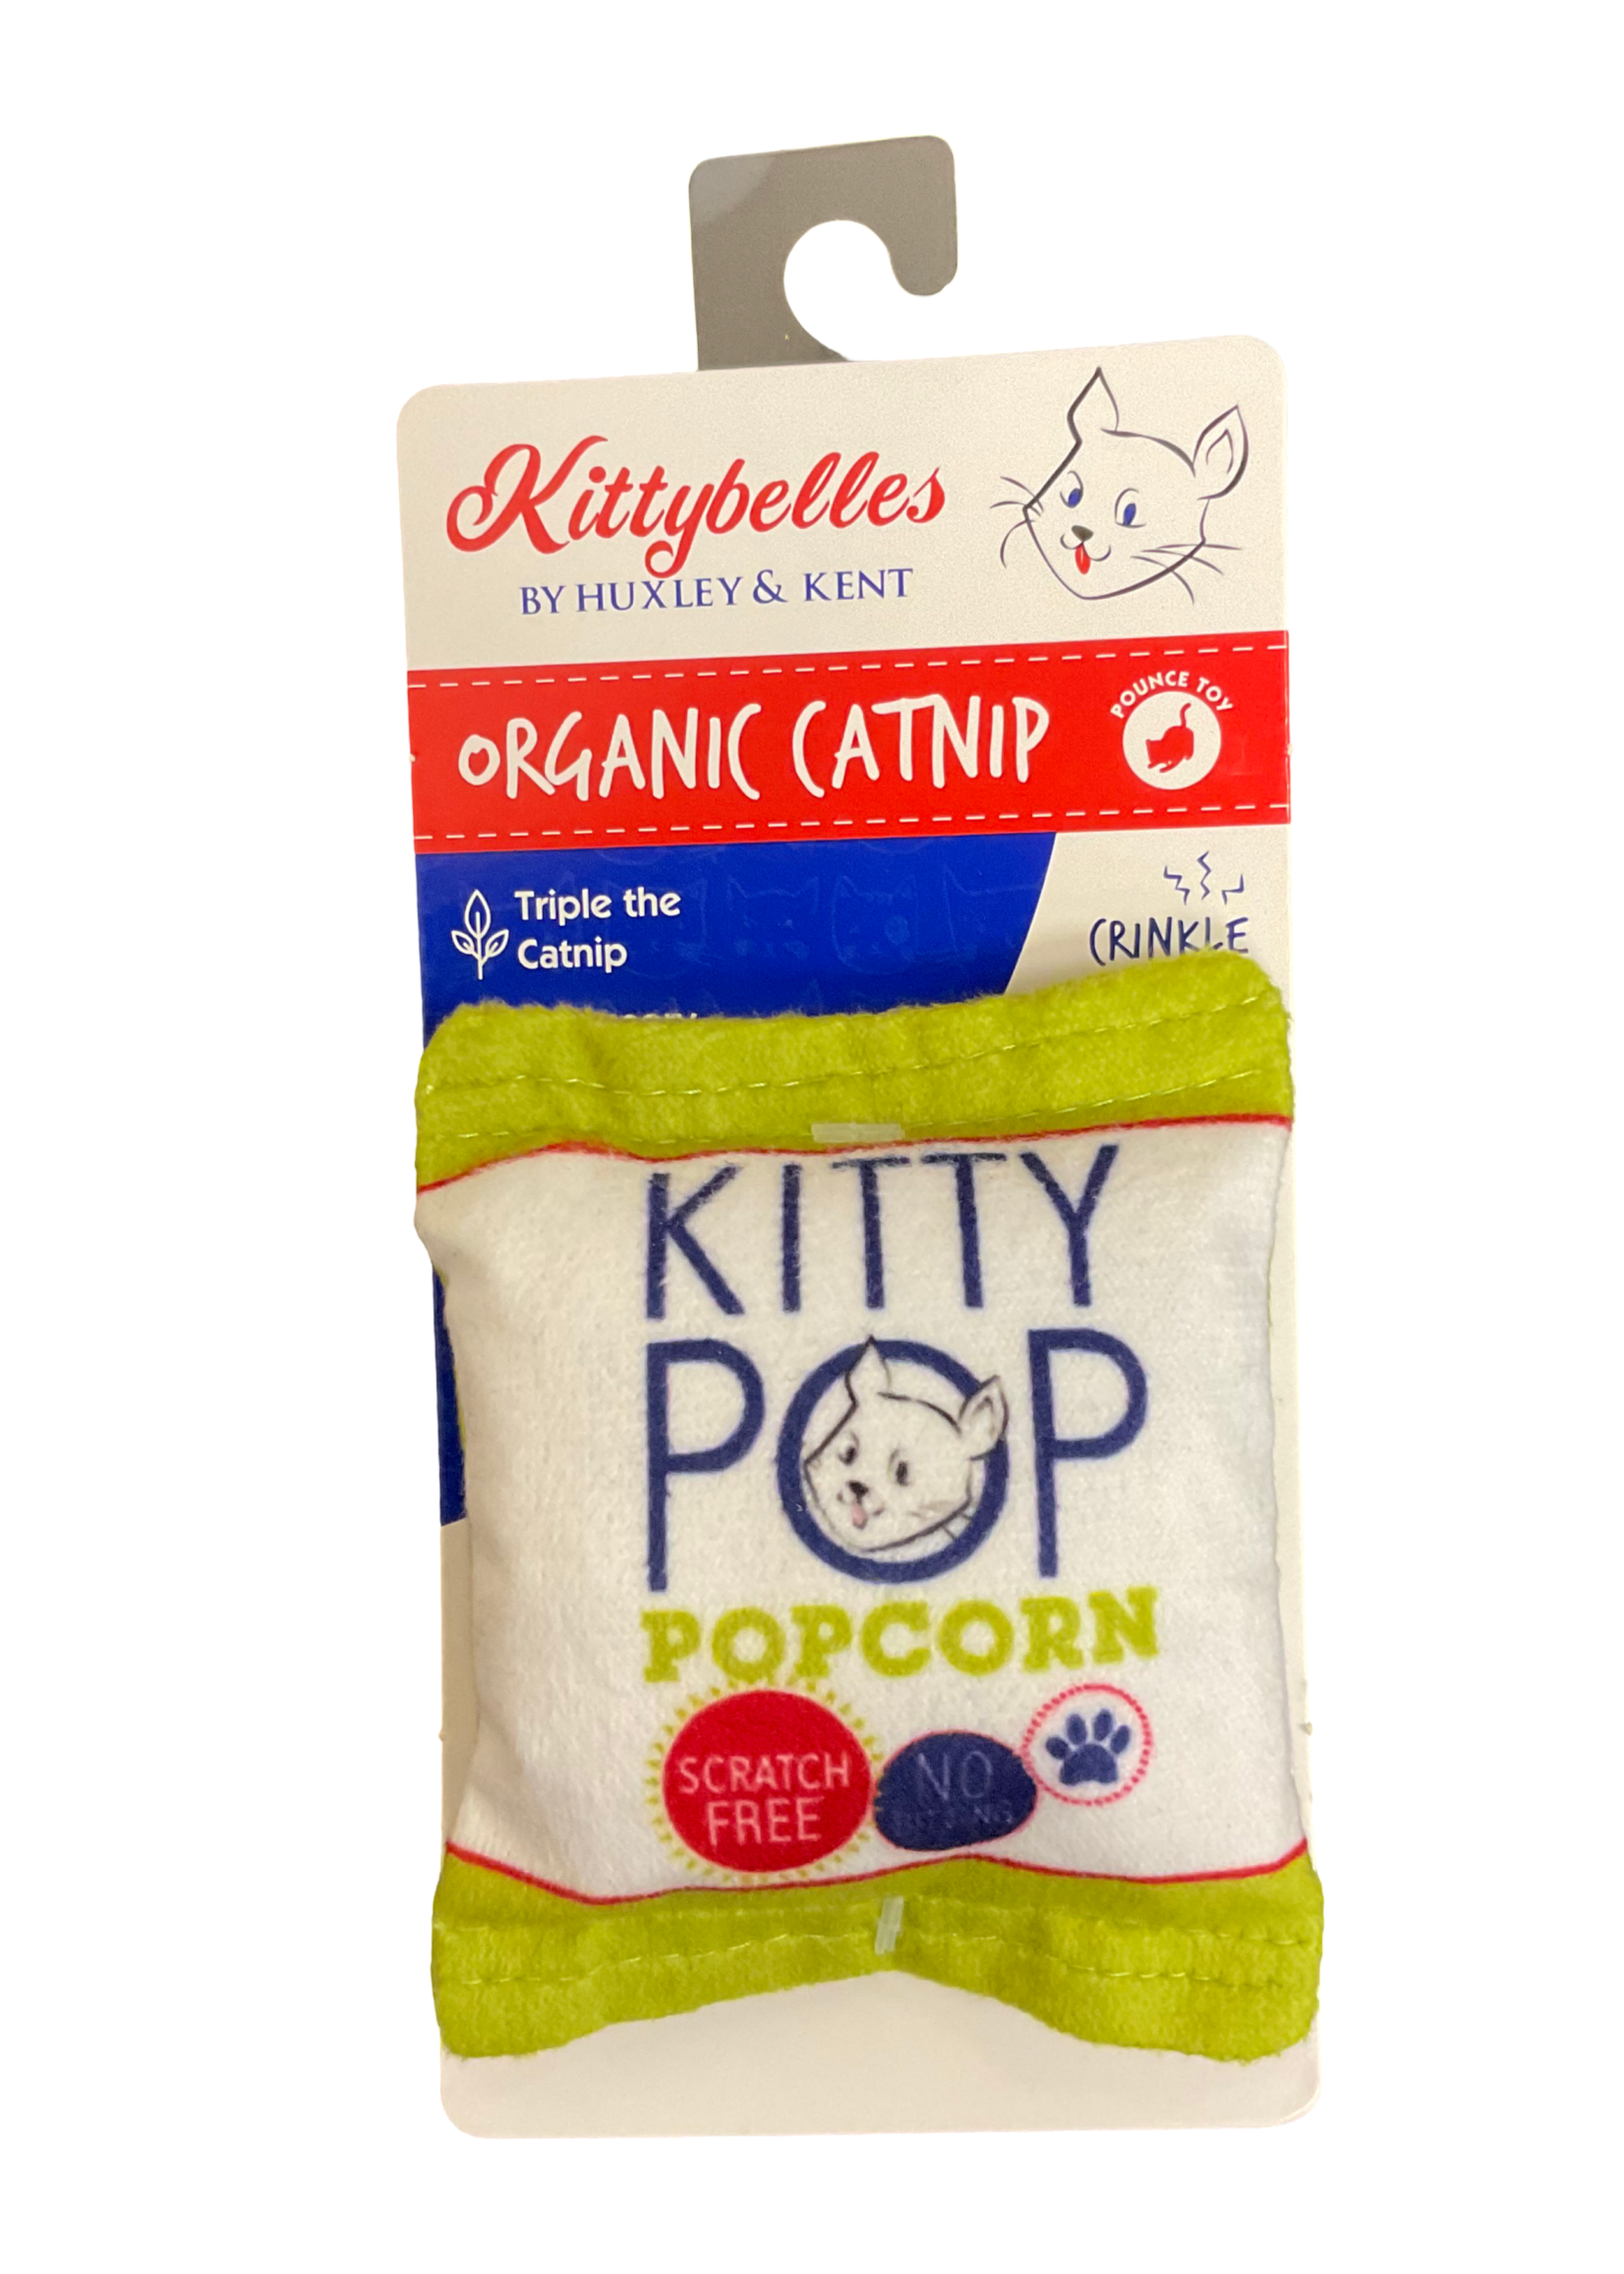 Kittybelle Kitty Pop